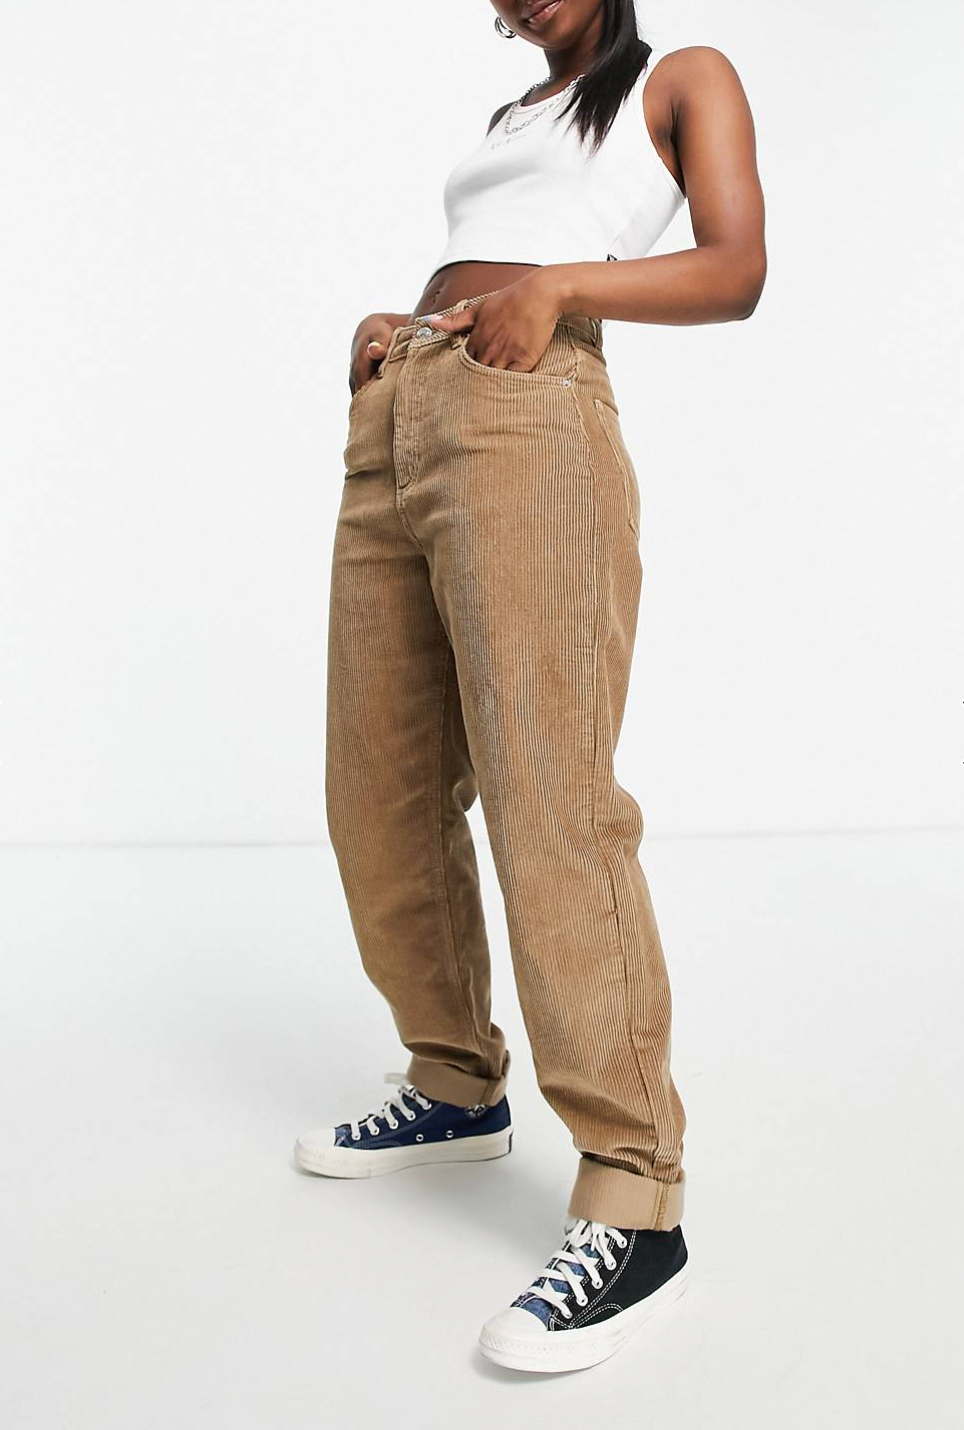 Вельветовые брюки — лучшая осенняя альтернатива джинсам